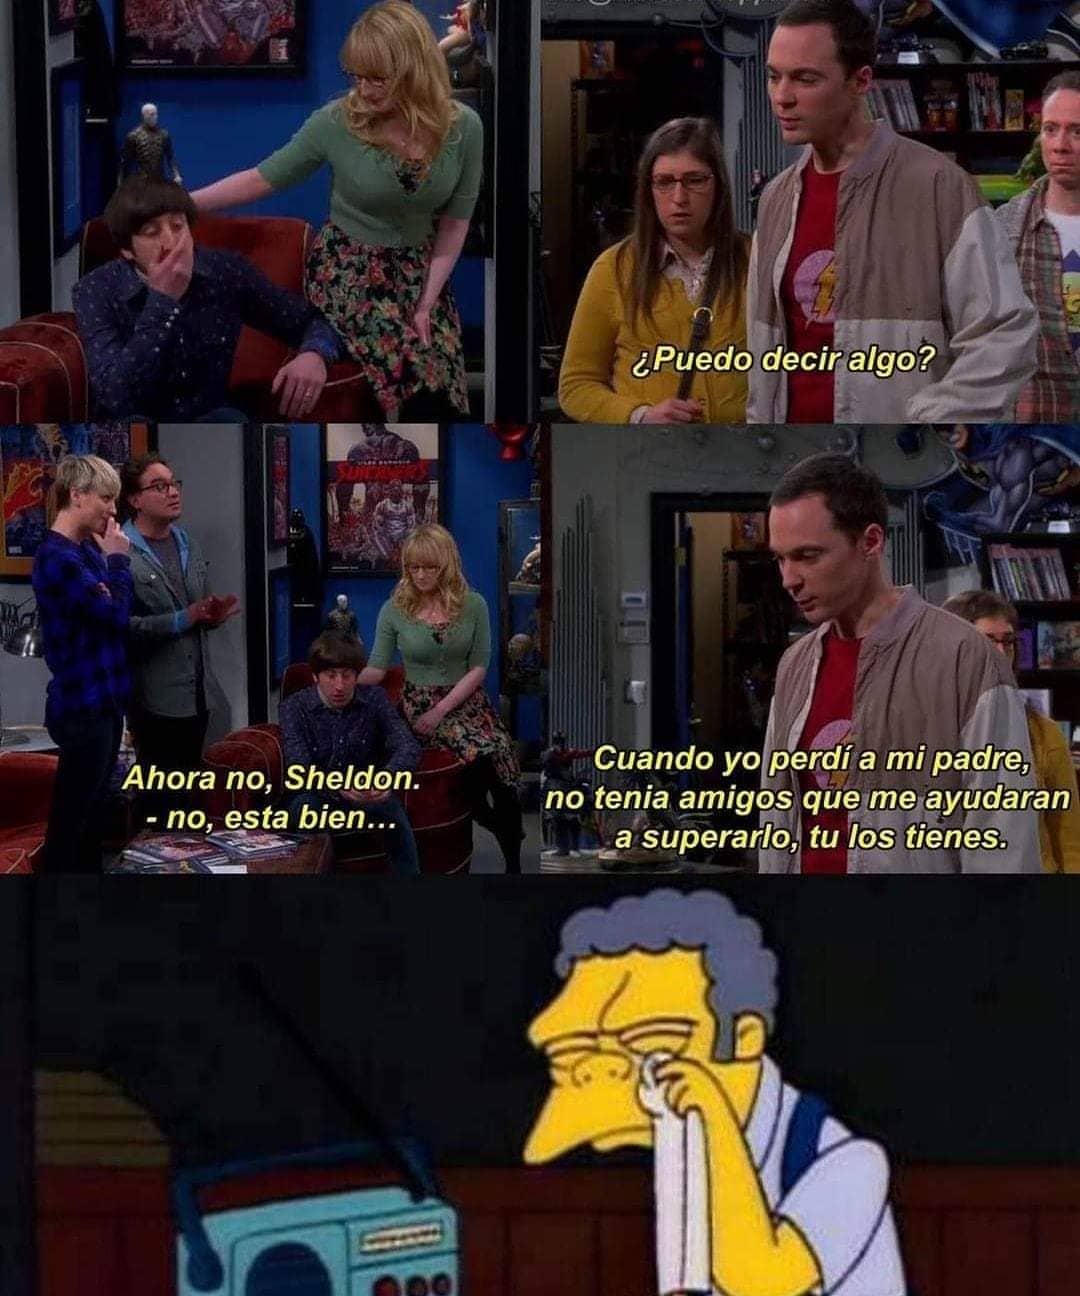 ¿Puedo decir algo?  Ahora no Sheldon. No está bien.  Cuando yo perdí a mi padre, no tenía amigos que me ayudaran a superarlo. Tú los tienes.